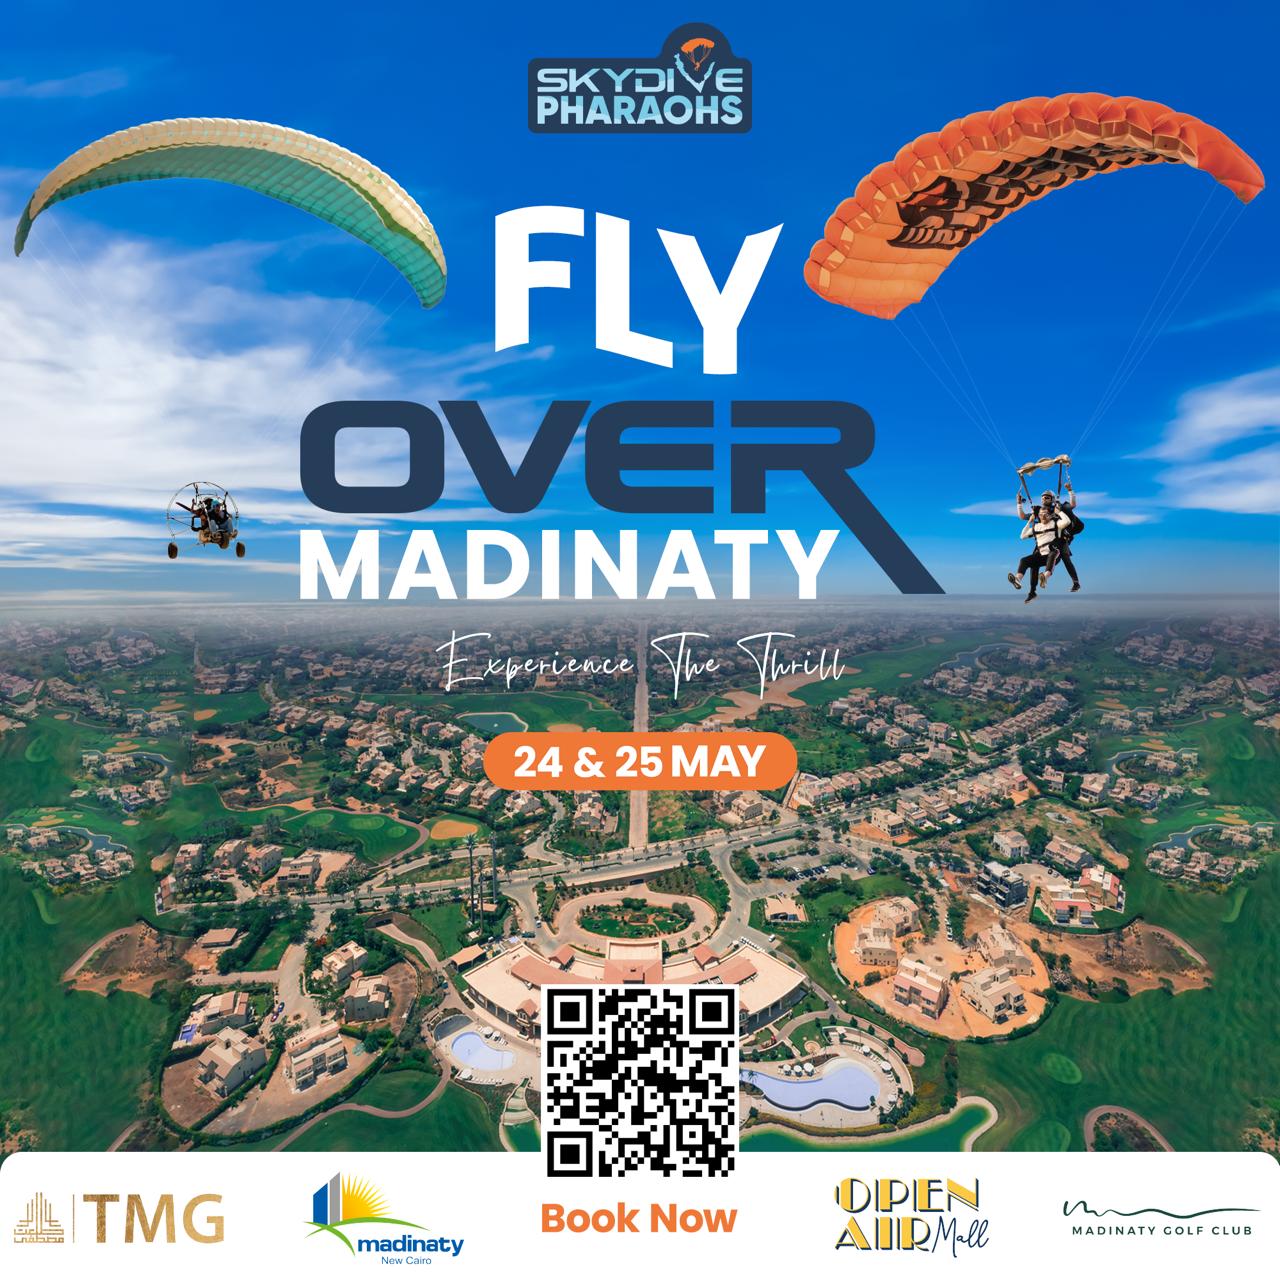 Fly over Madinaty